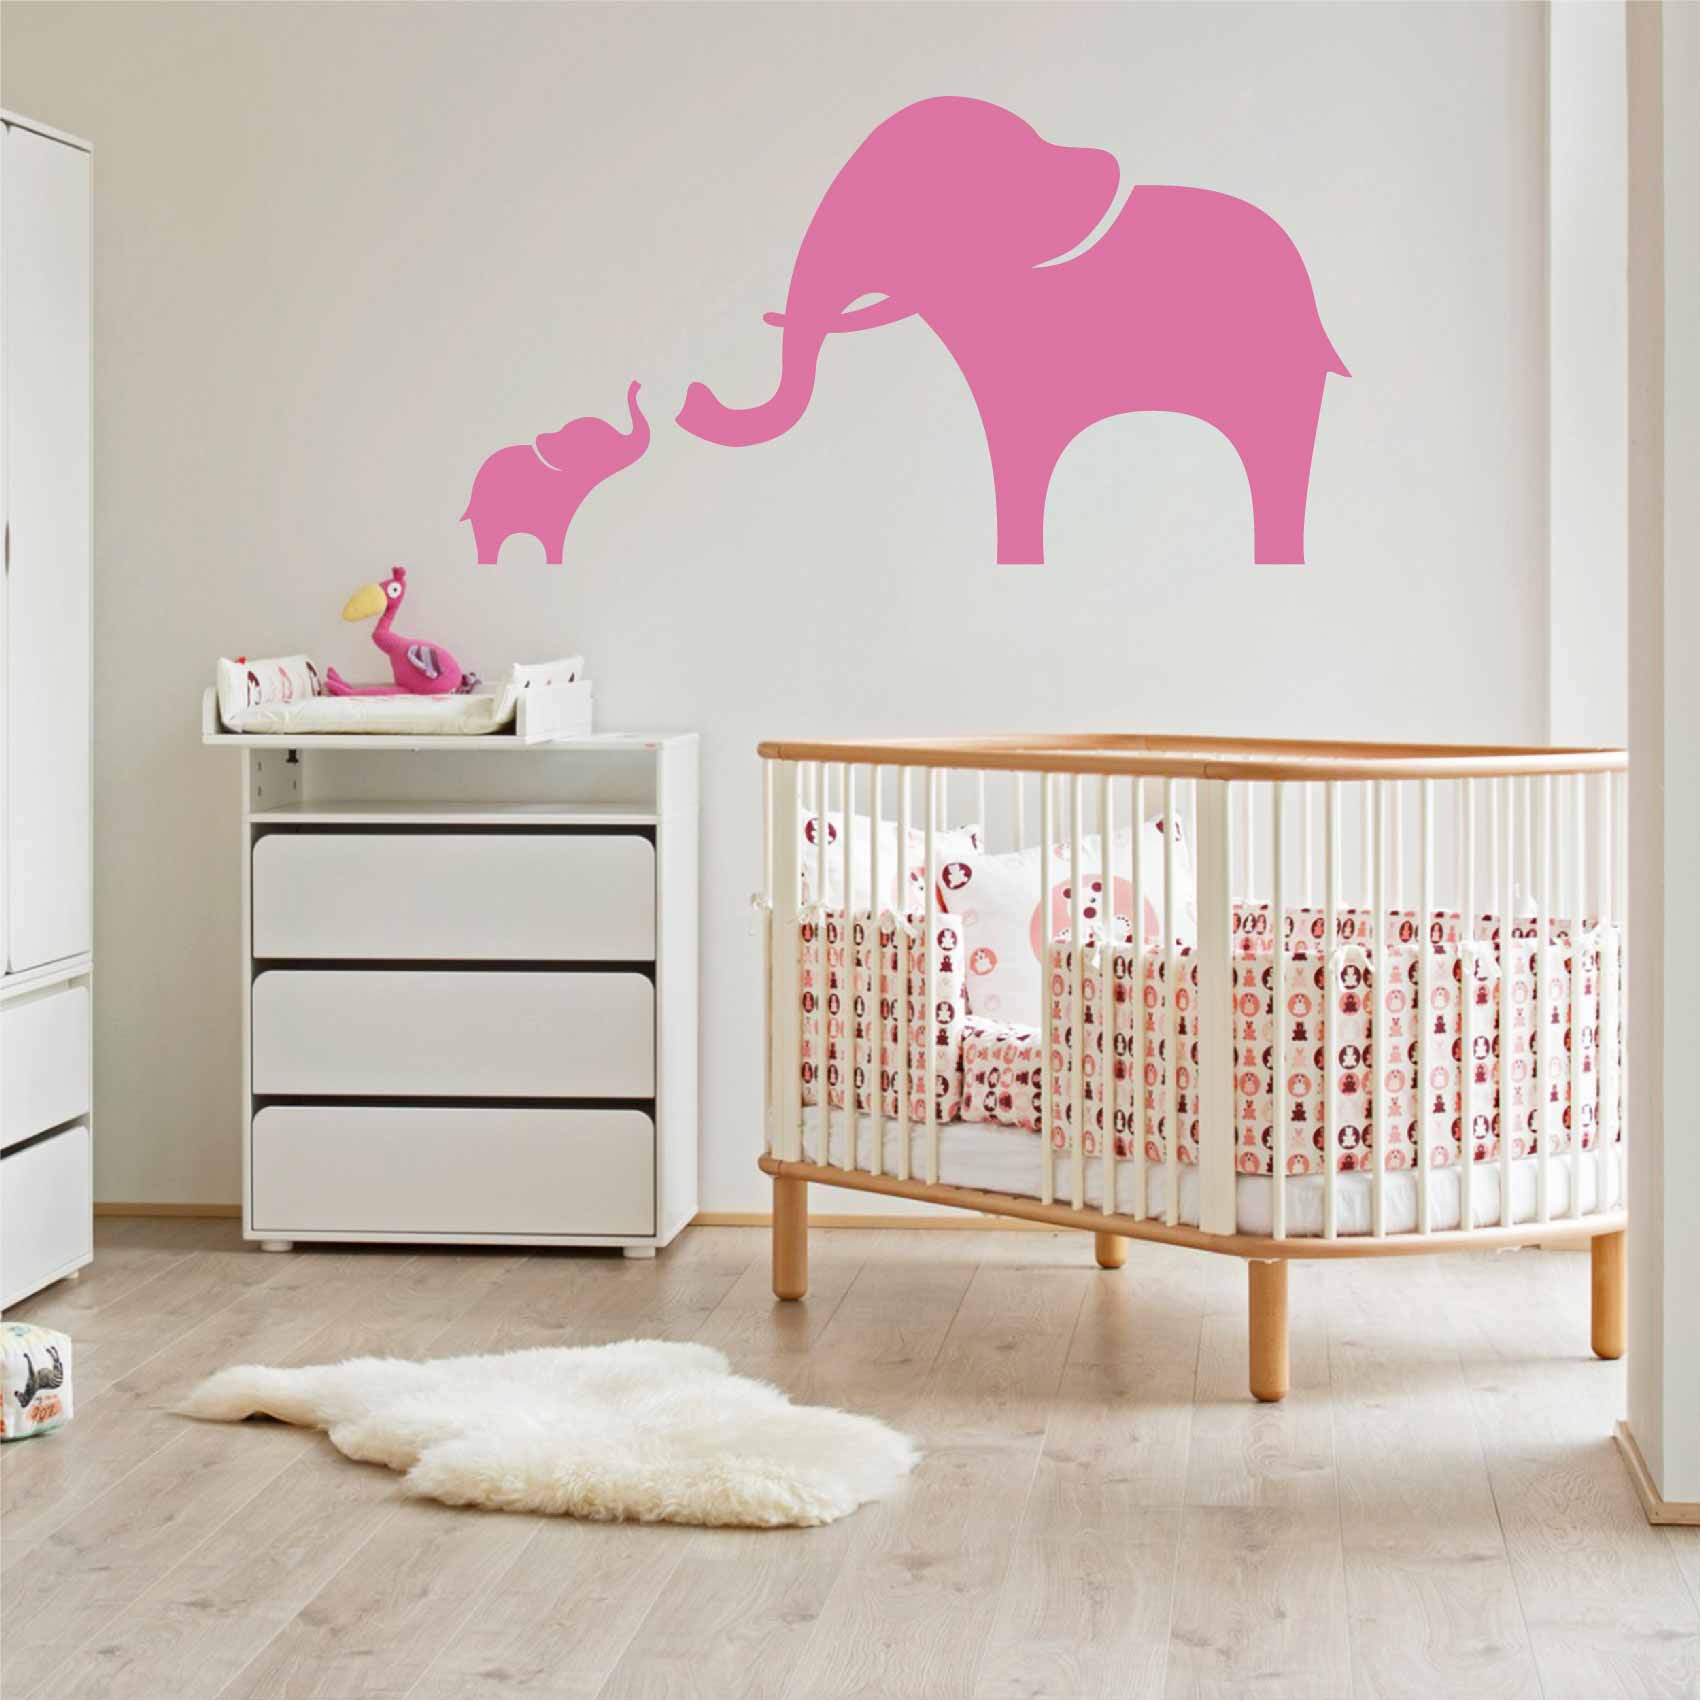 stickers-elephant-ref3elephant-stickers-muraux-elephants-autocollant-chambre-deco-sticker-mural-éléphant-enfant